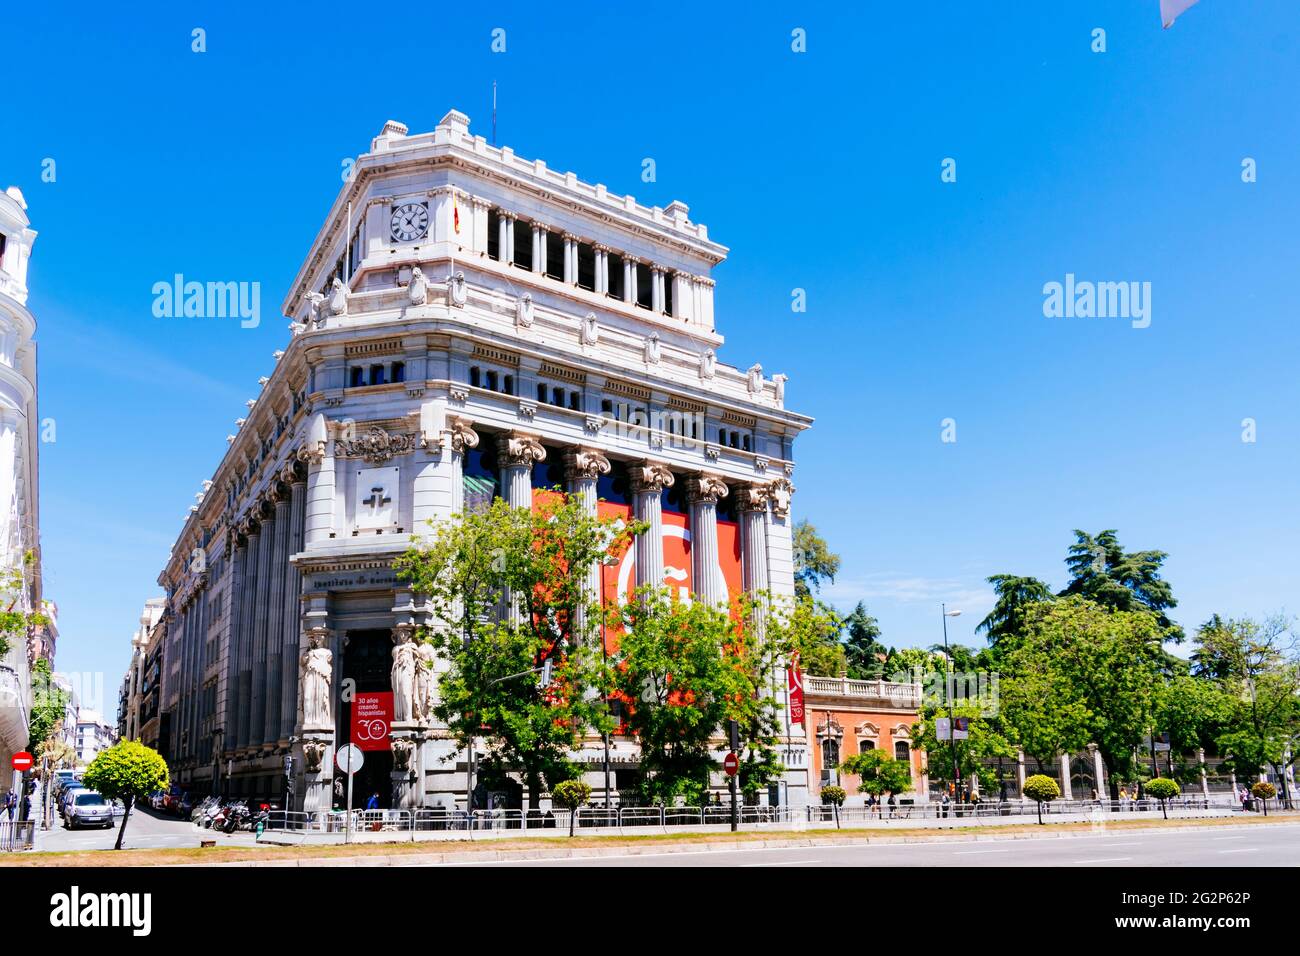 Edificio Instituto Cervantes. Edificio de Las Cariátides, Edificio Caryatid, es un edificio de la capital española de Madrid construido por el arquitecto español Foto de stock